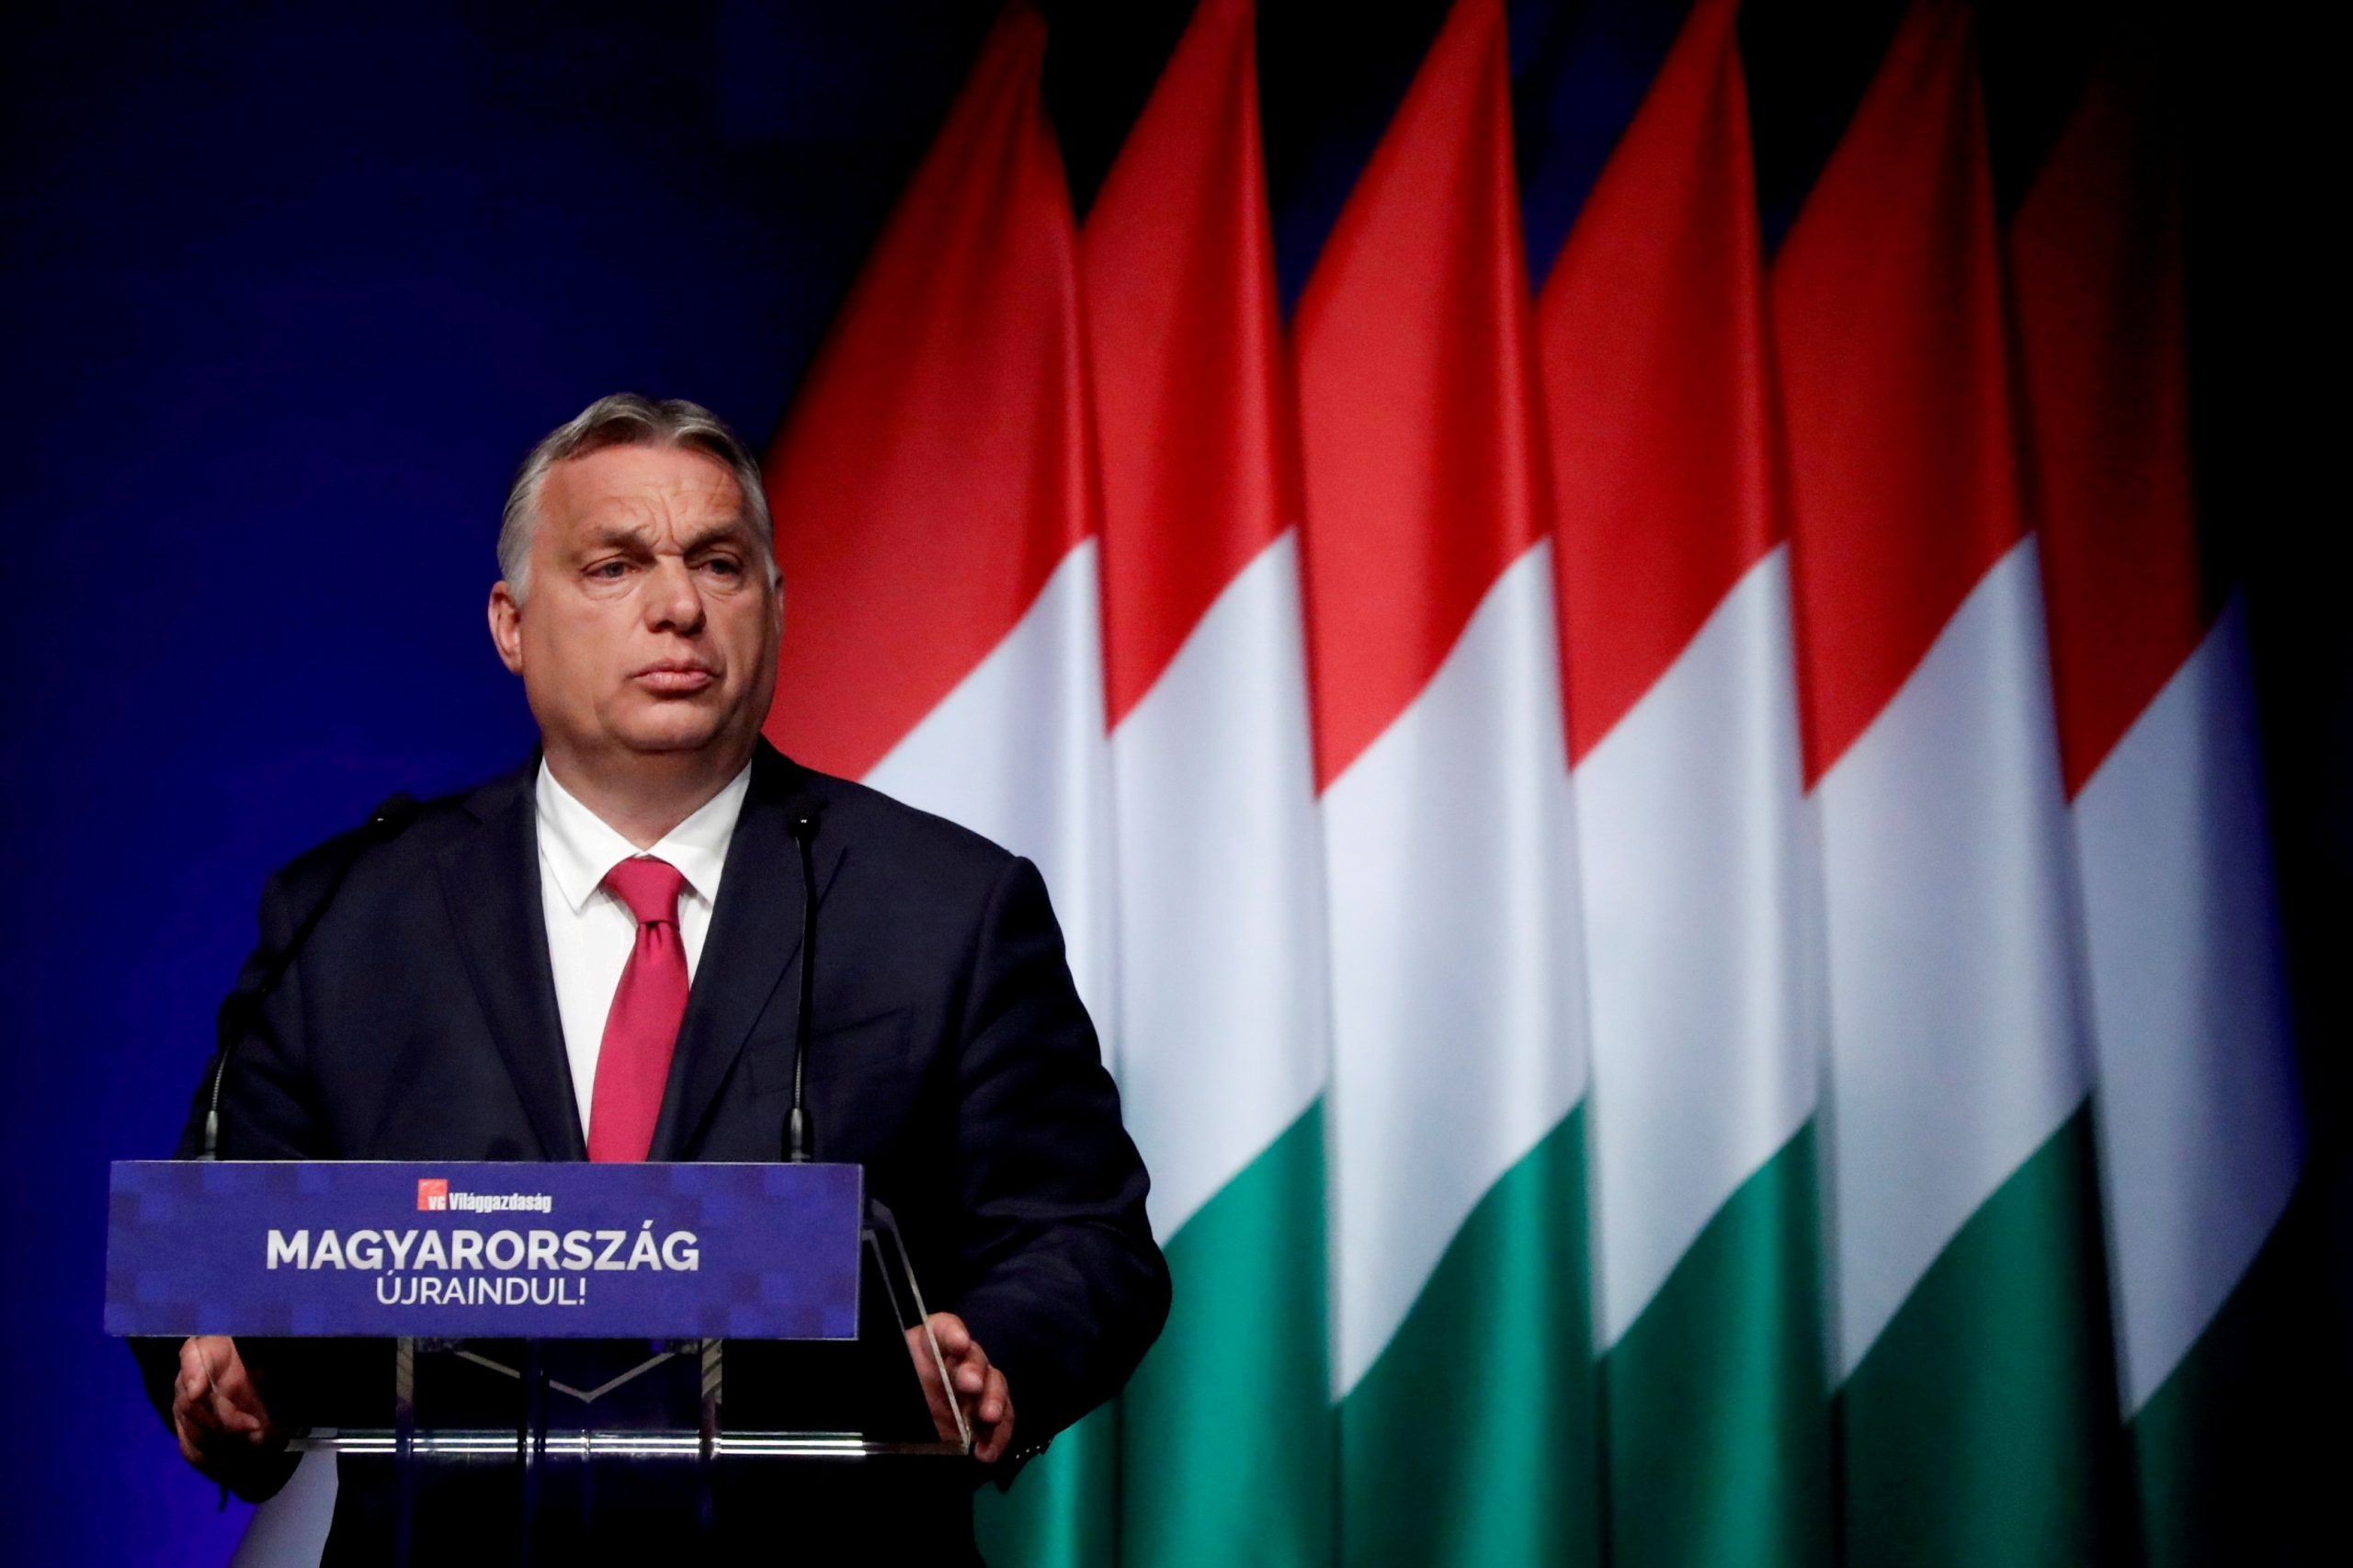 Ουγγαρία – Διακοπή των προκριματικών εκλογών της αντιπολίτευσης λόγω βλάβης στο πληροφοριακό σύστημα